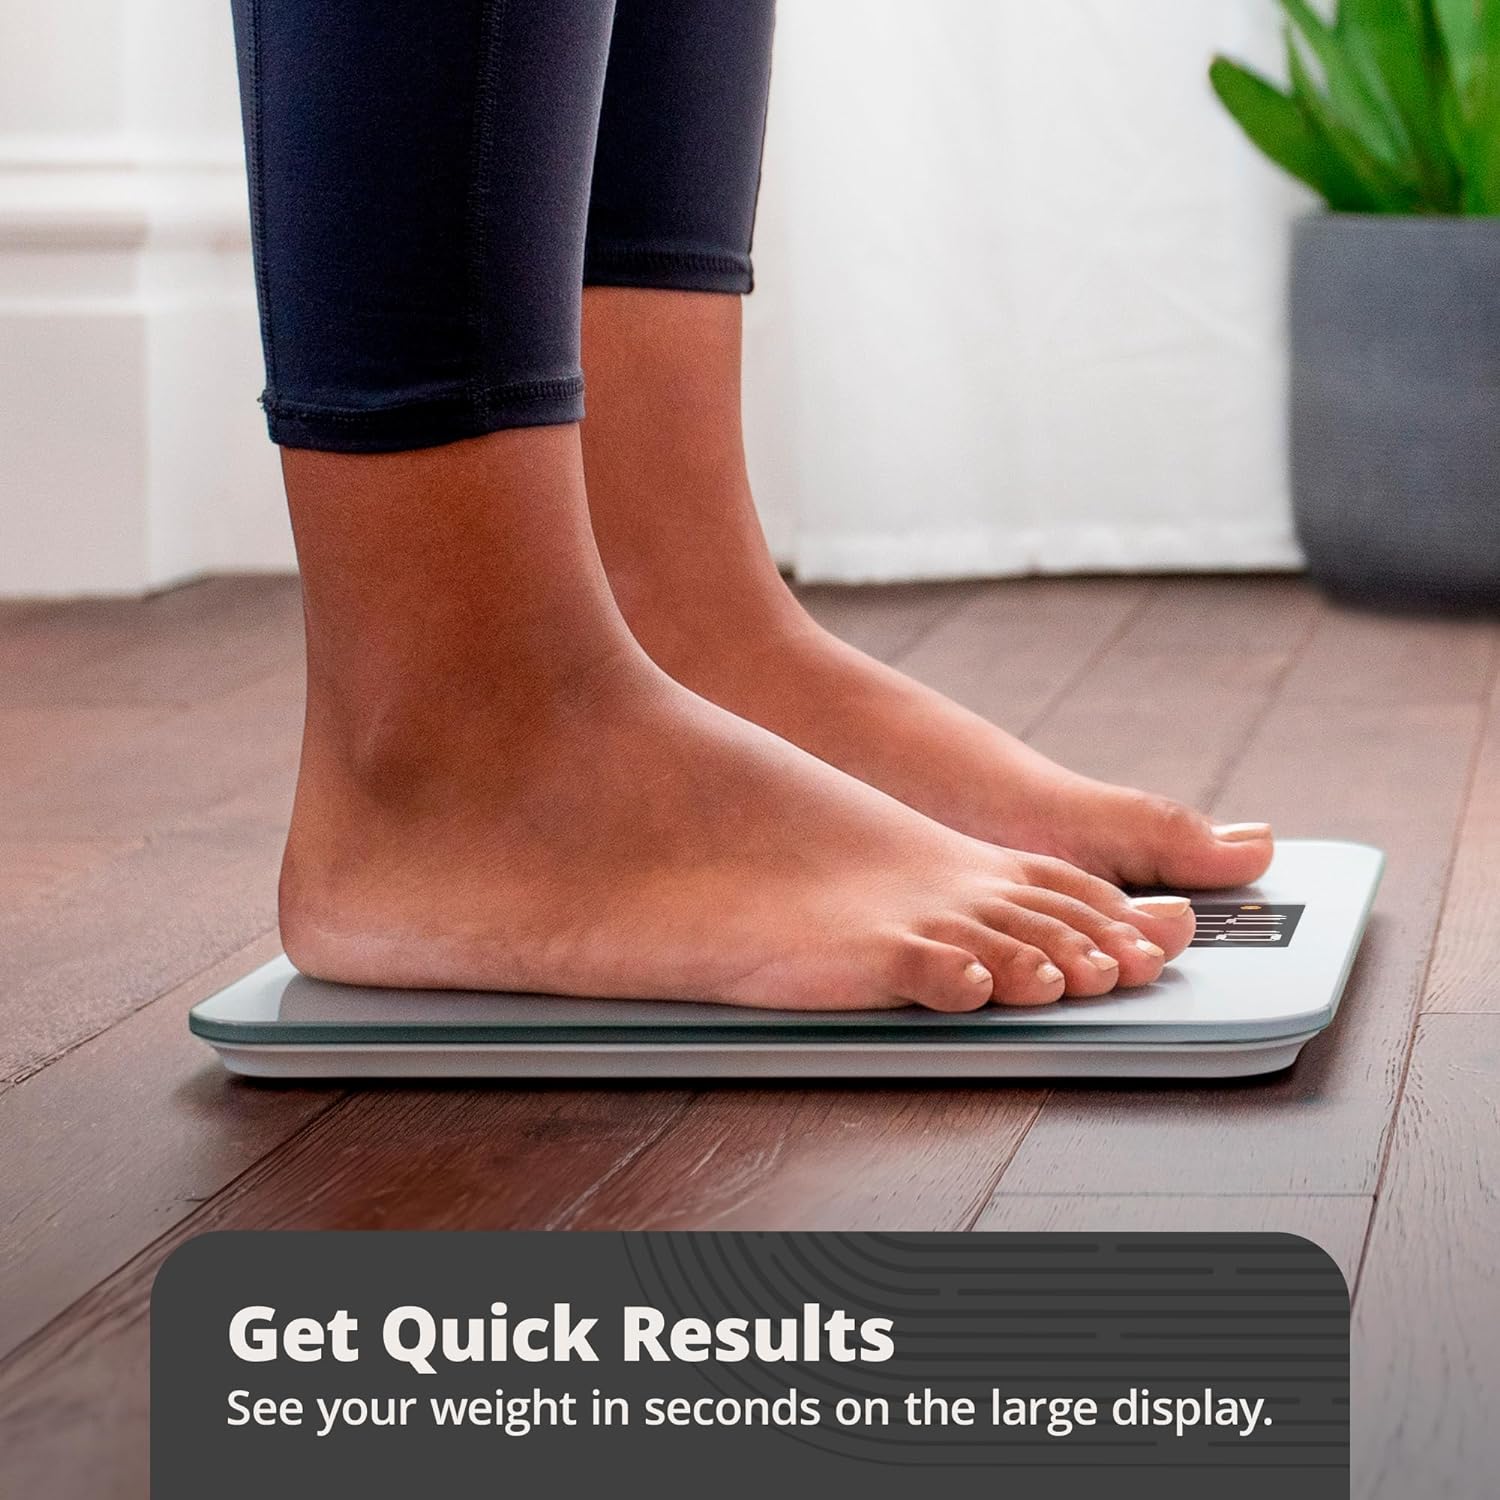 Báscula digital AccuCheck para peso corporal